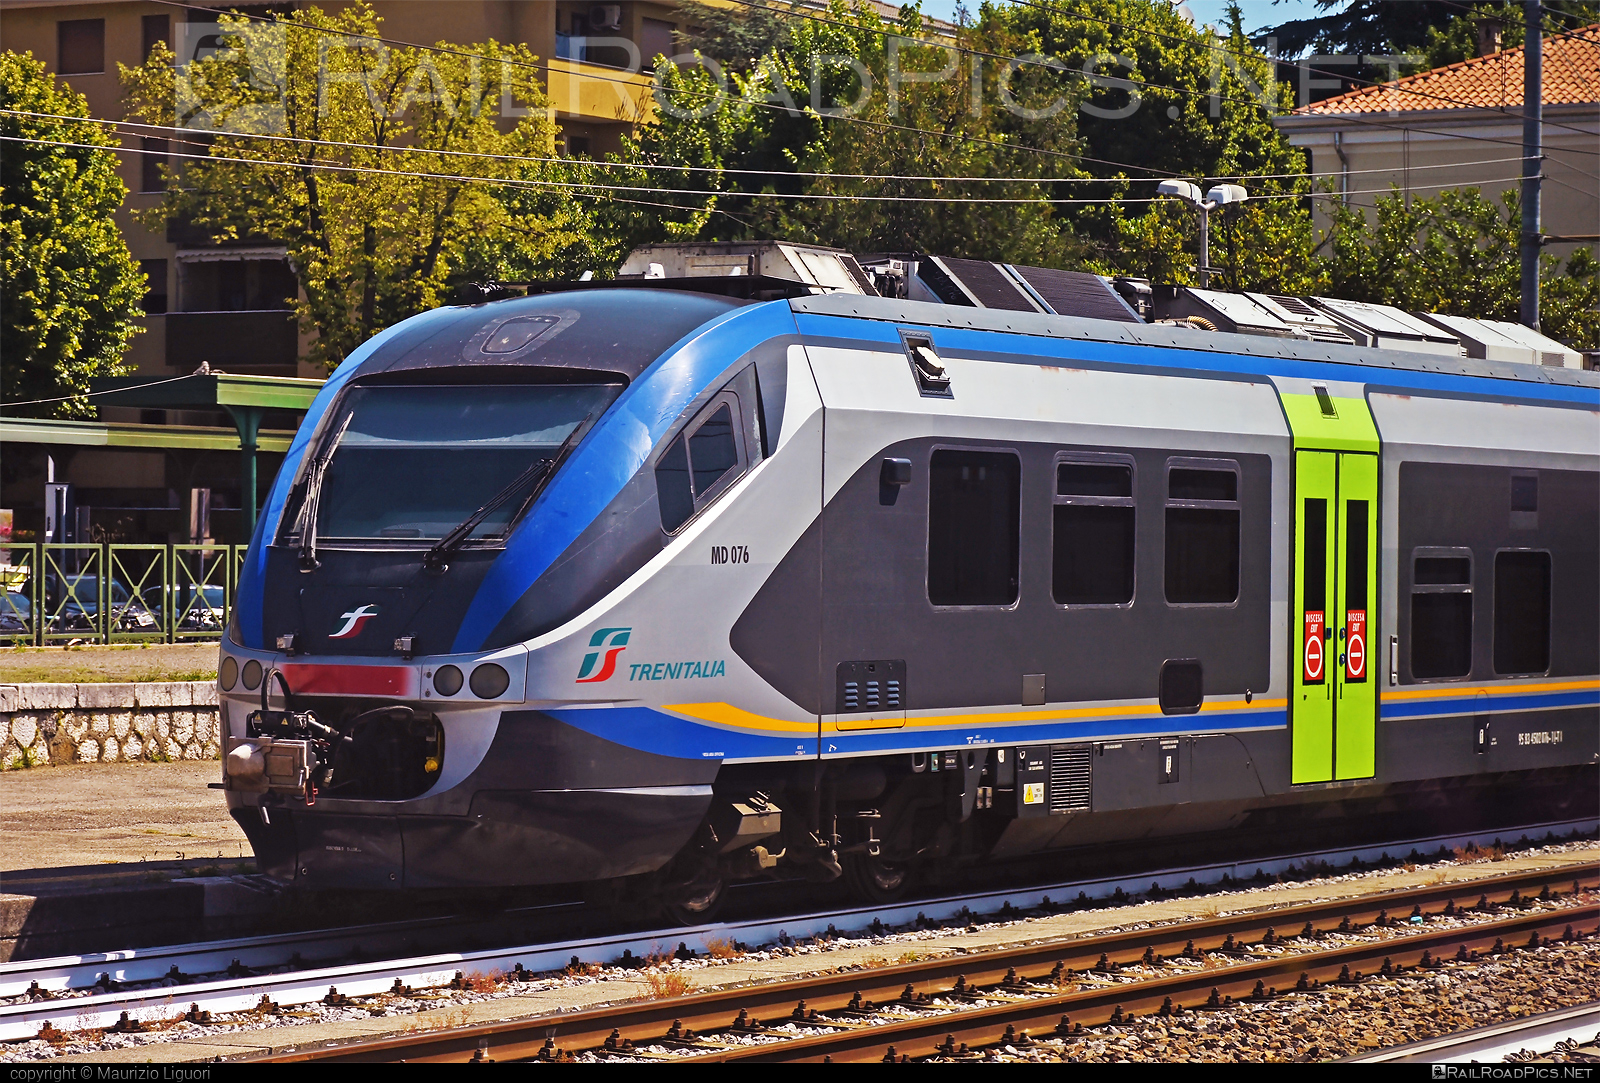 Alstom Minuetto - MD 076 operated by Trenitalia S.p.A. #alstom #alstomminuetto #ferroviedellostato #fs #fsitaliane #minuetto #trenitalia #trenitaliaspa